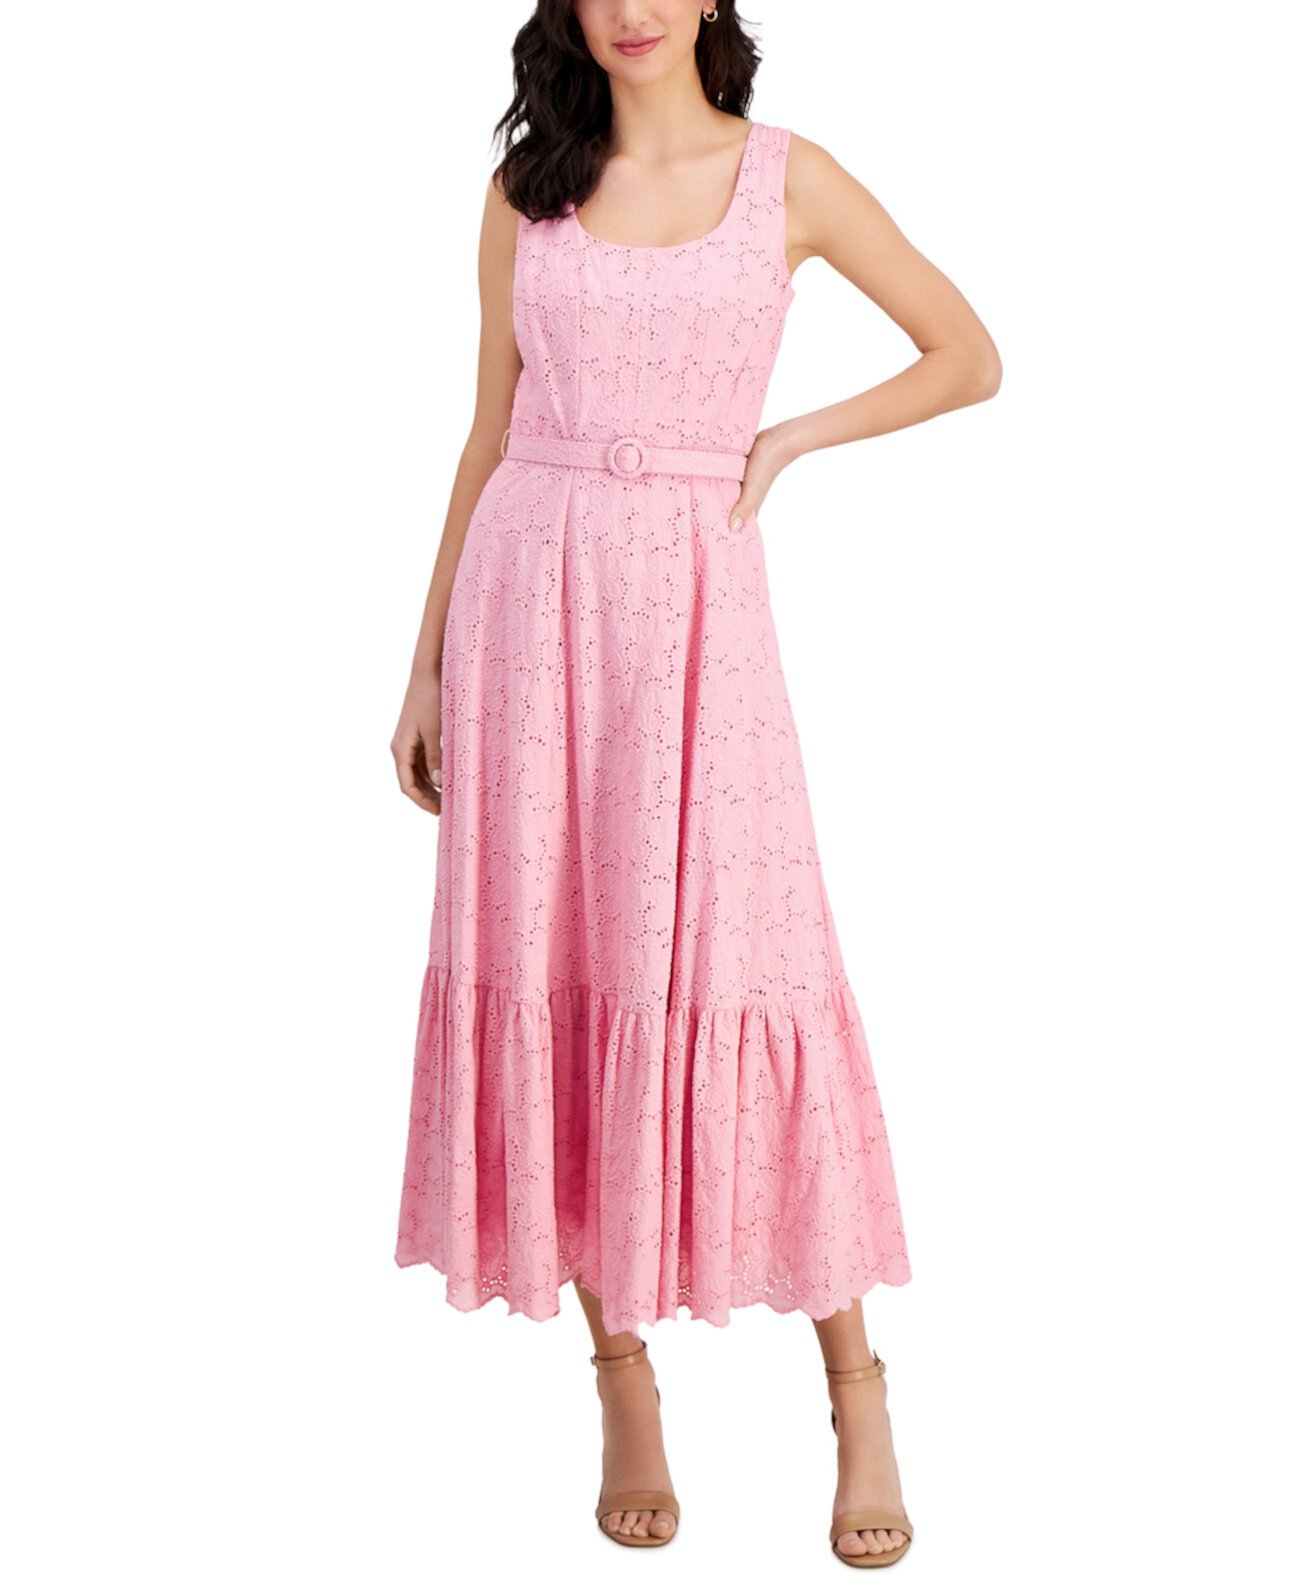 Женское платье с вырезом лодочкой, поясом и вышивкой, люверсами Taylor